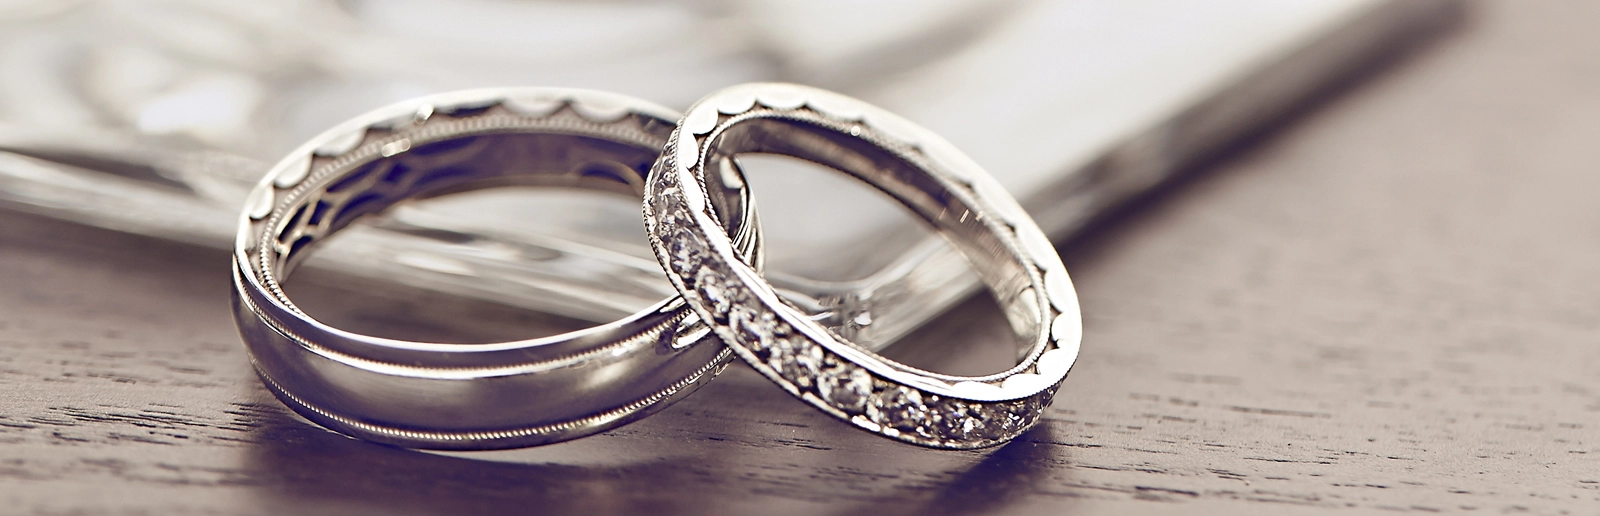 Nhẫn cưới bằng vàng trắng đẹp, tuy nhiên thường xuyên phải xi lại nếu không sẽ dễ bị xỉn màu.